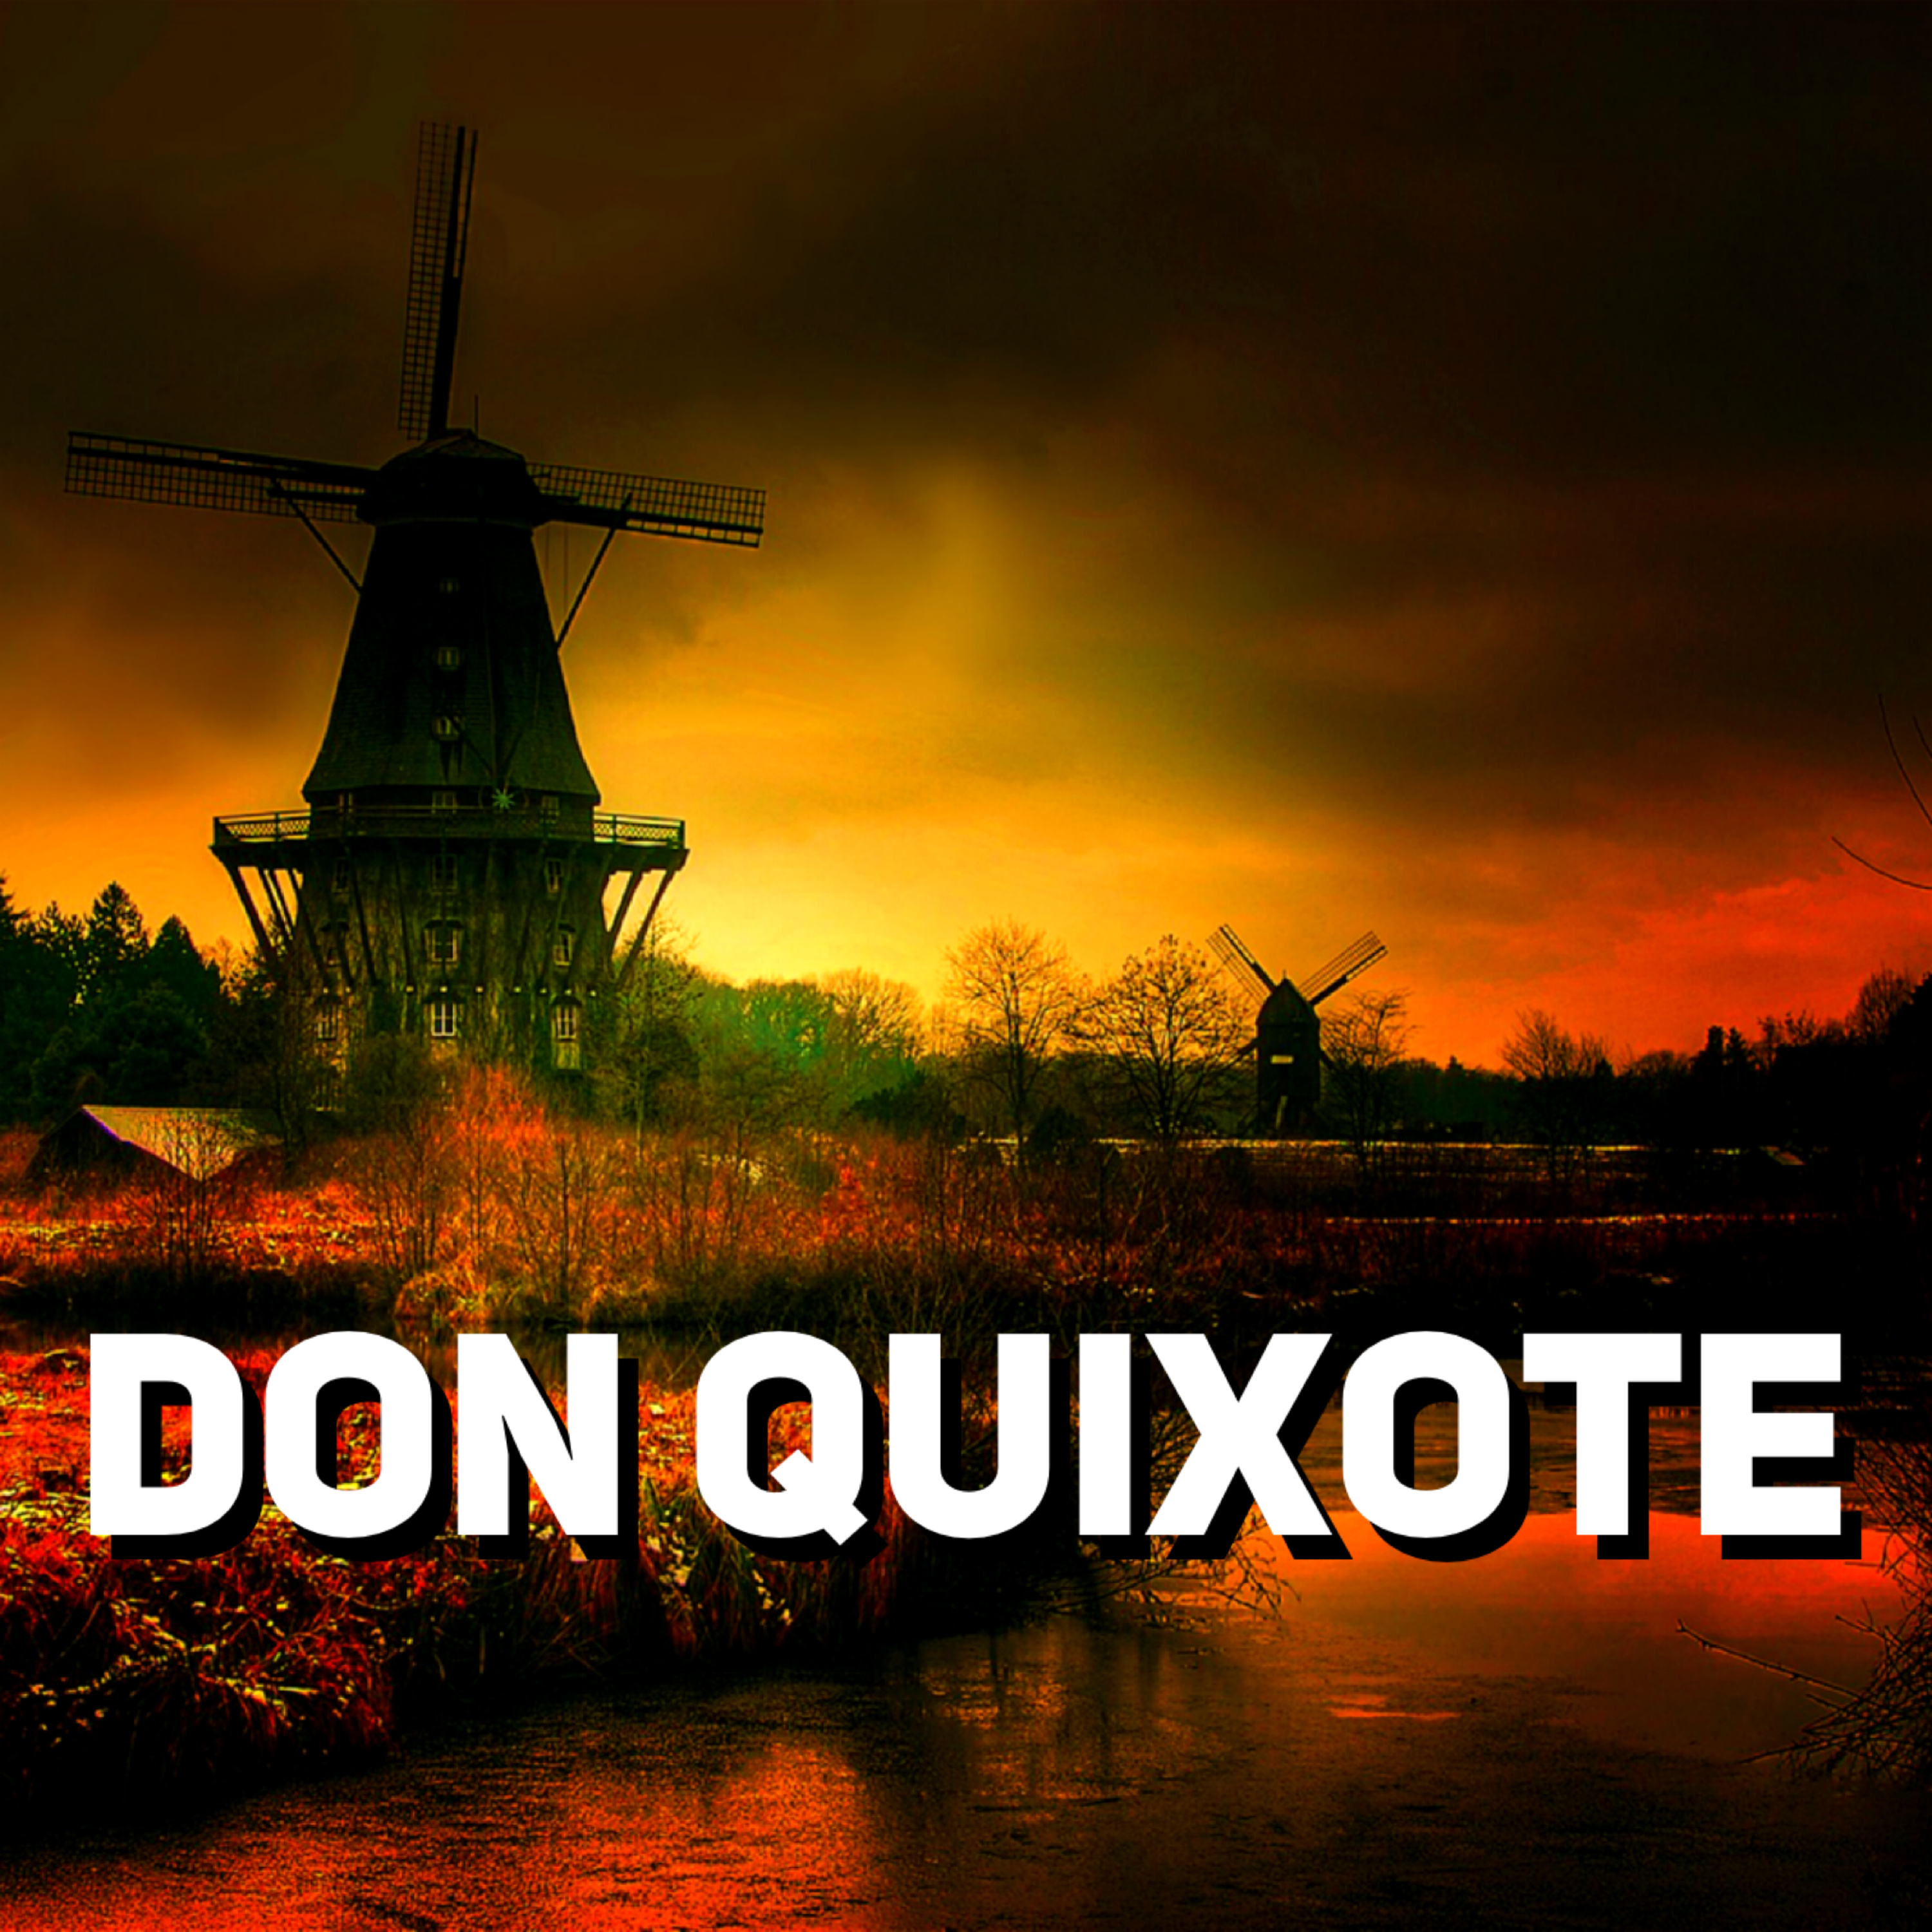 ASMR | (1) DON QUIXOTE by Miguel De Cervantes 1605